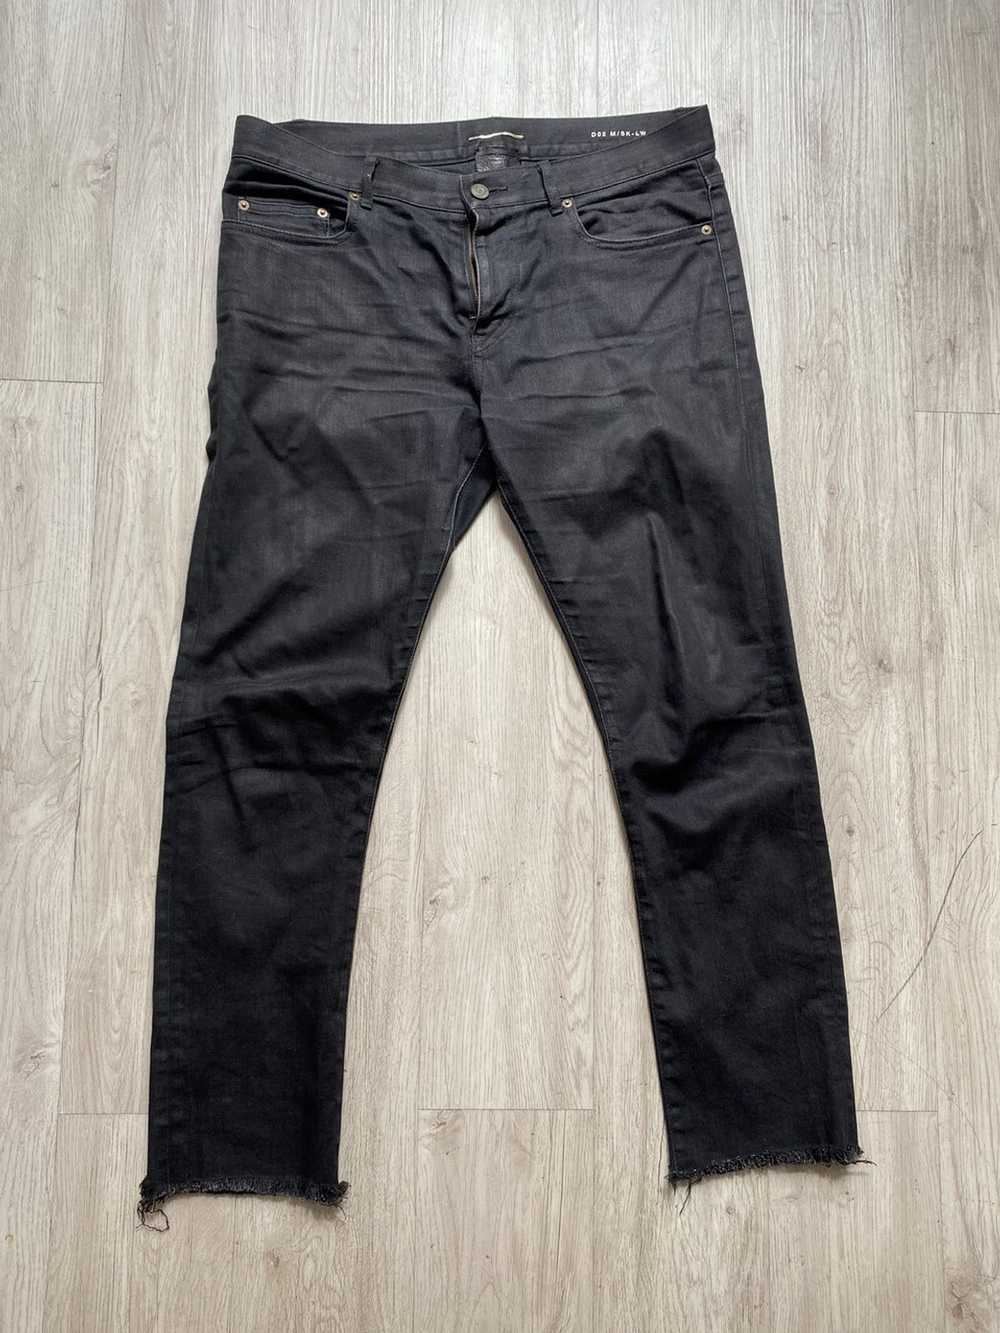 Saint Laurent Paris Saint Laurent D02 cut jeans F… - image 1